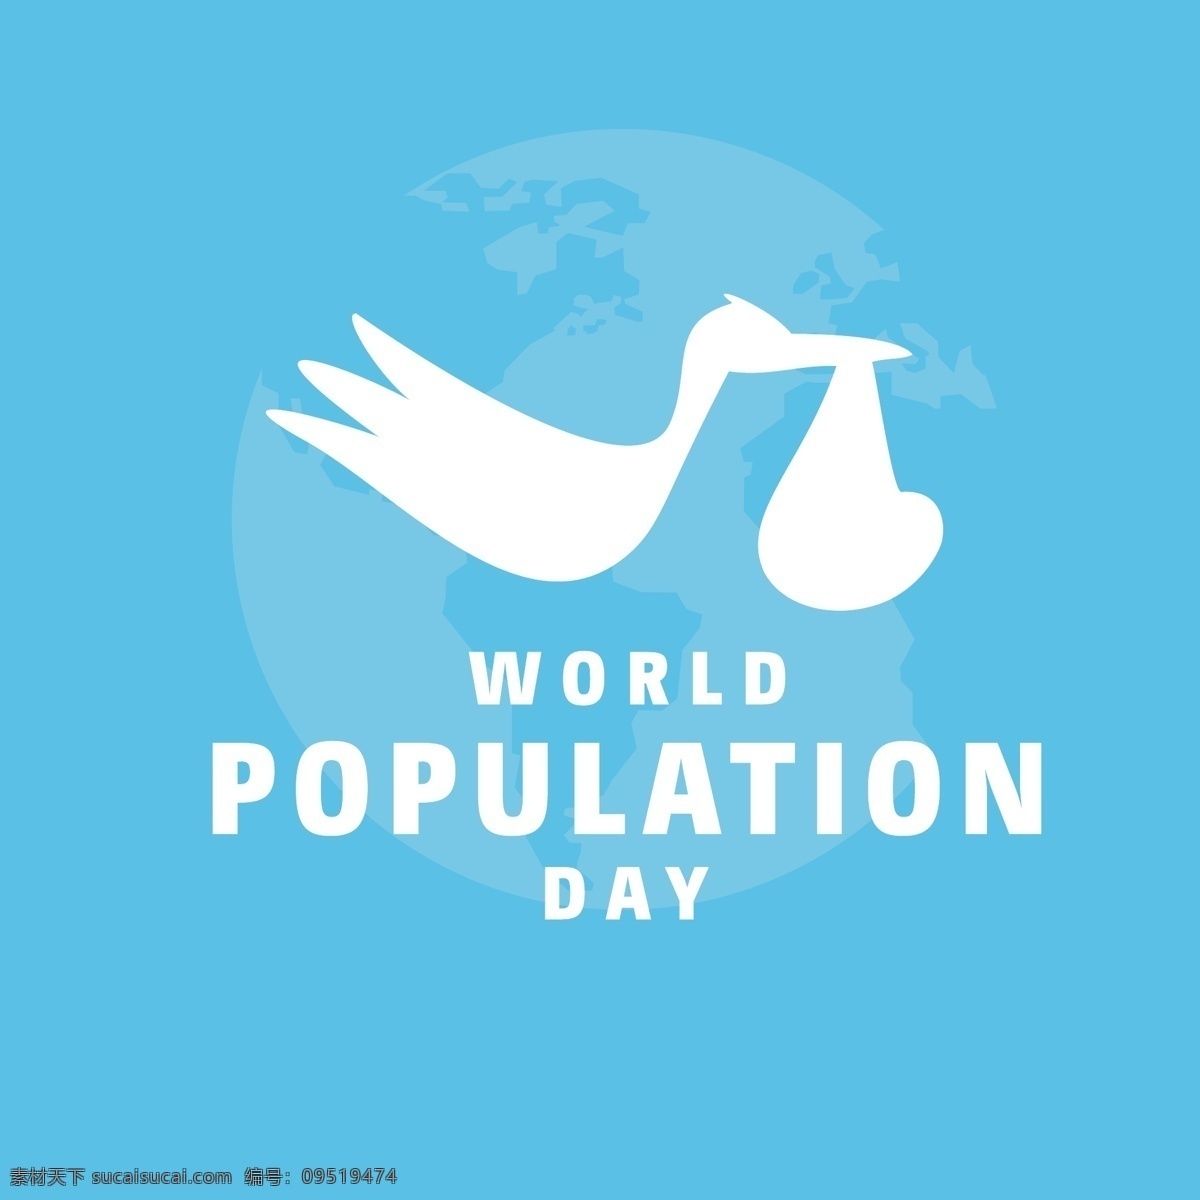 蓝色 世界 人口日 背景 蓝色世界 人口日背景 青色 天蓝色